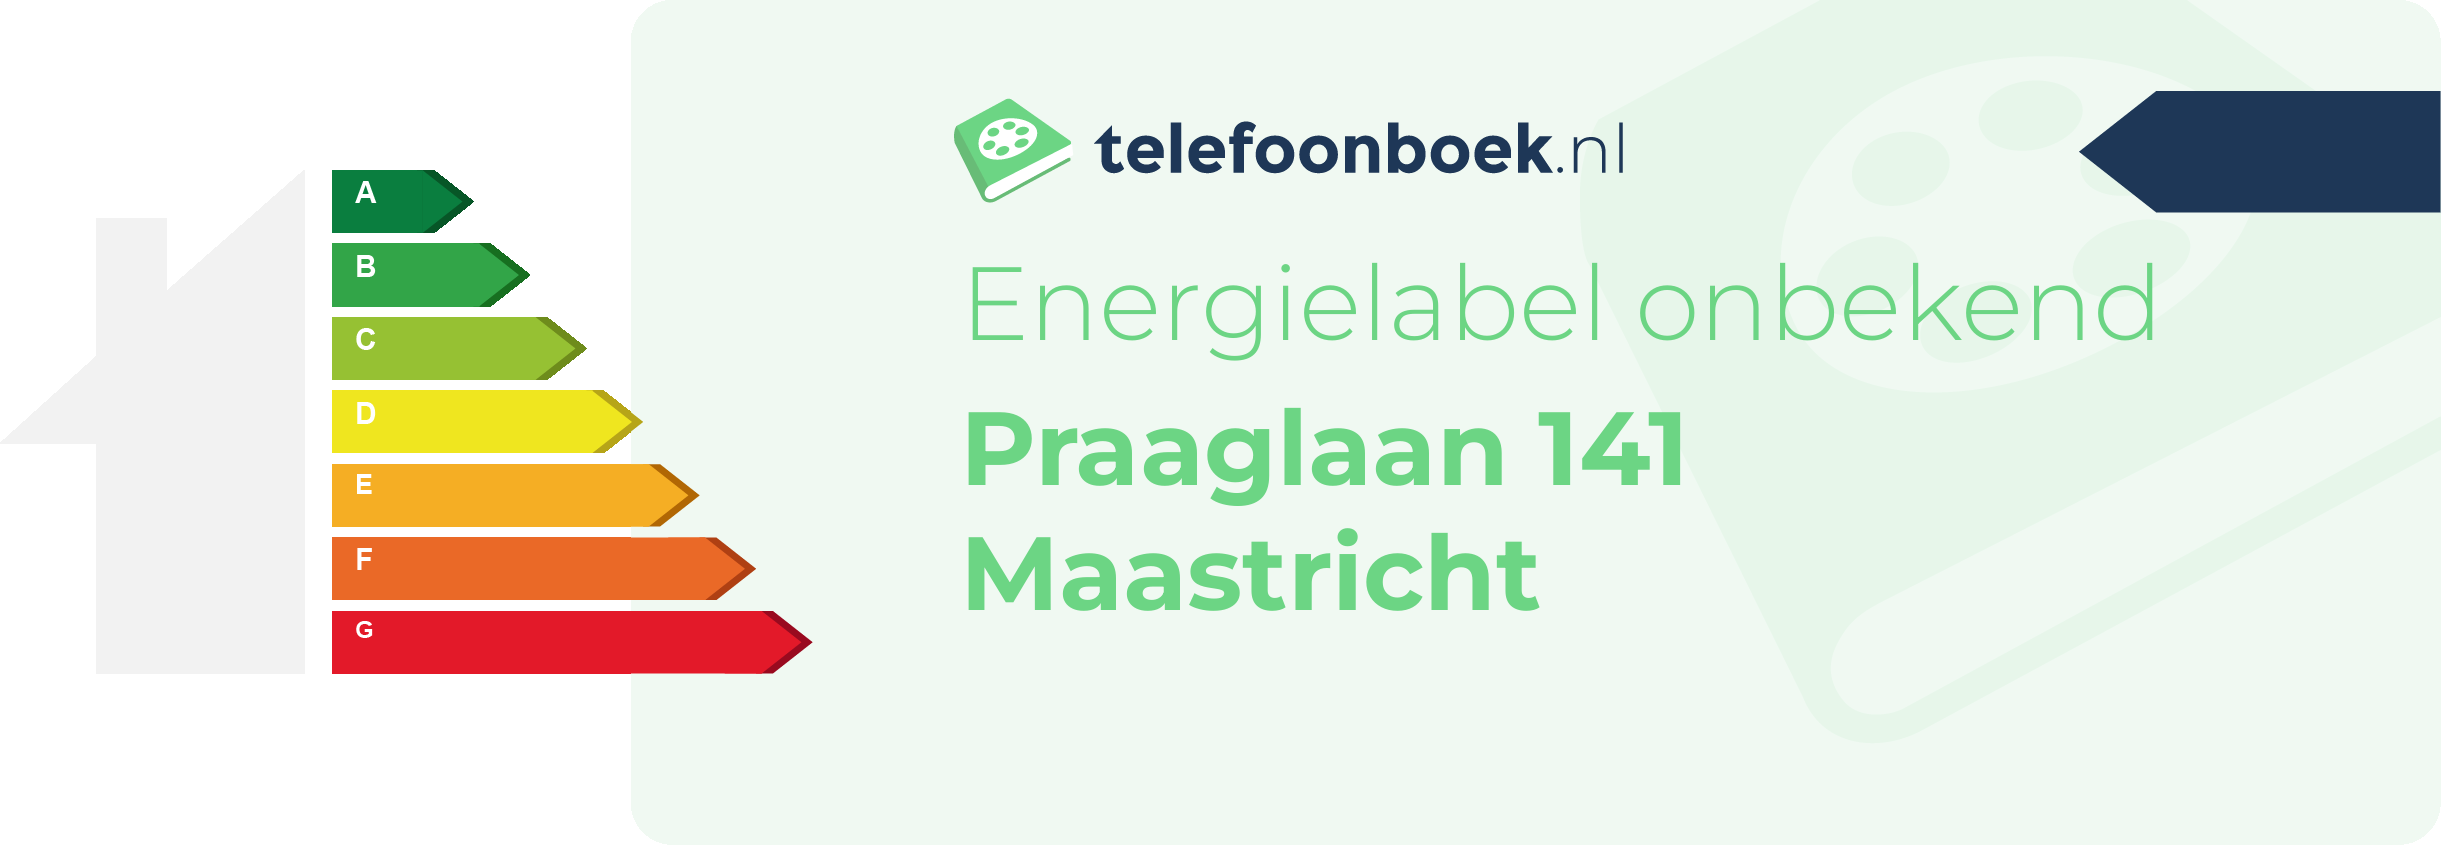 Energielabel Praaglaan 141 Maastricht